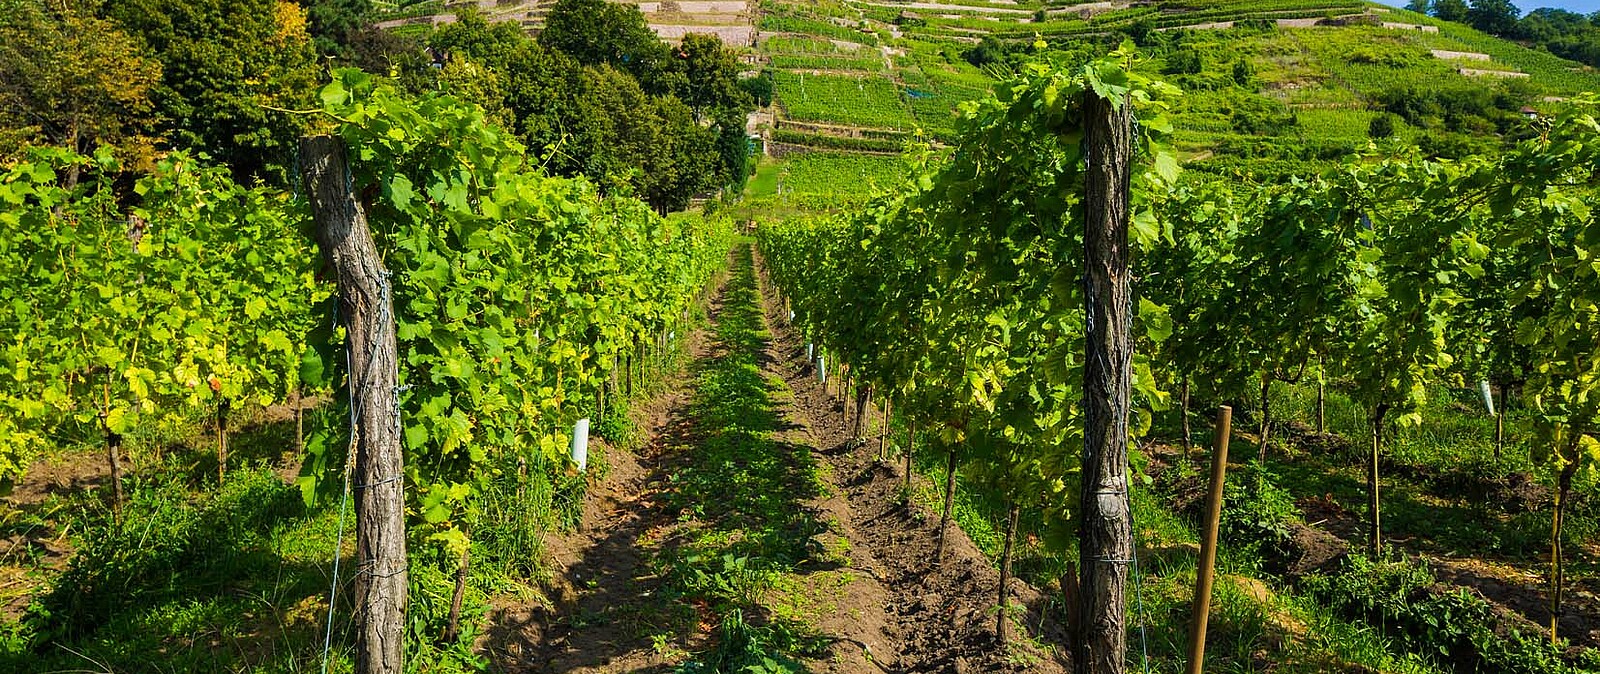 Verschenken Sie eine Rebstockpatenschaft sächsischer Winzer und unterstützen Sie damit nachhaltigen Weinbau